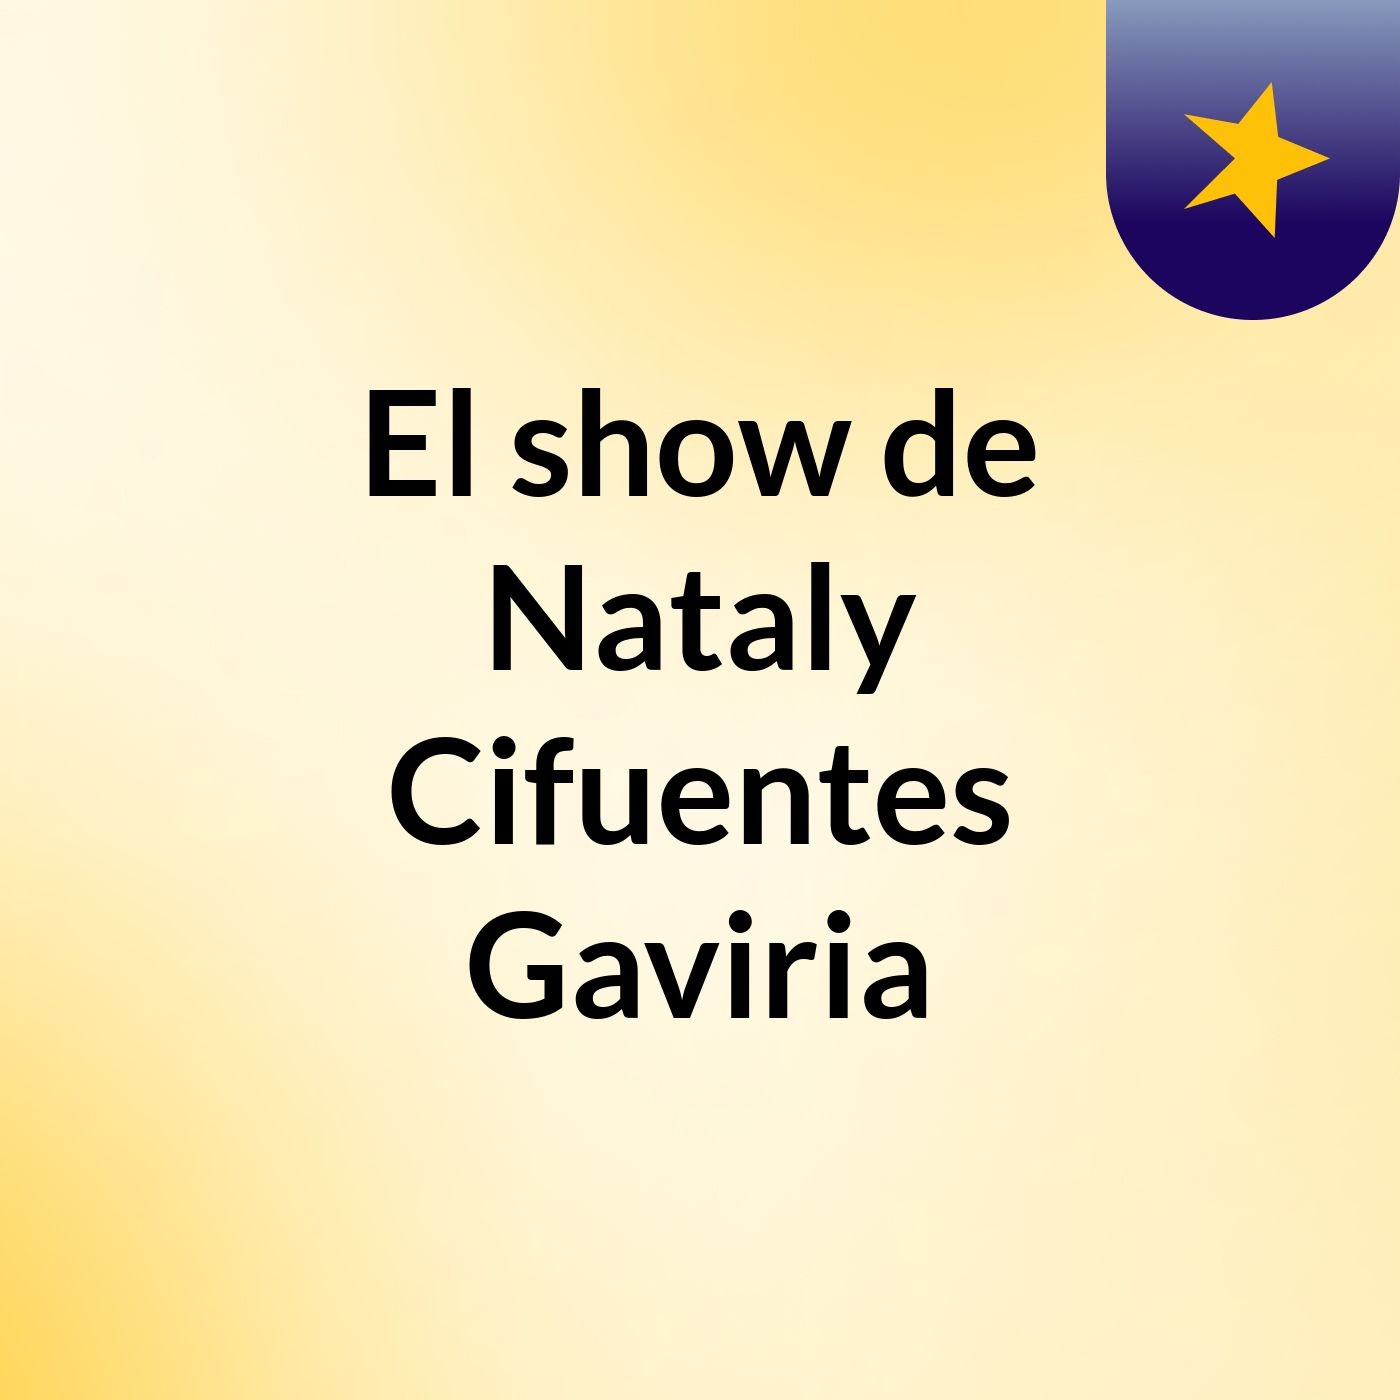 El show de Nataly Cifuentes Gaviria